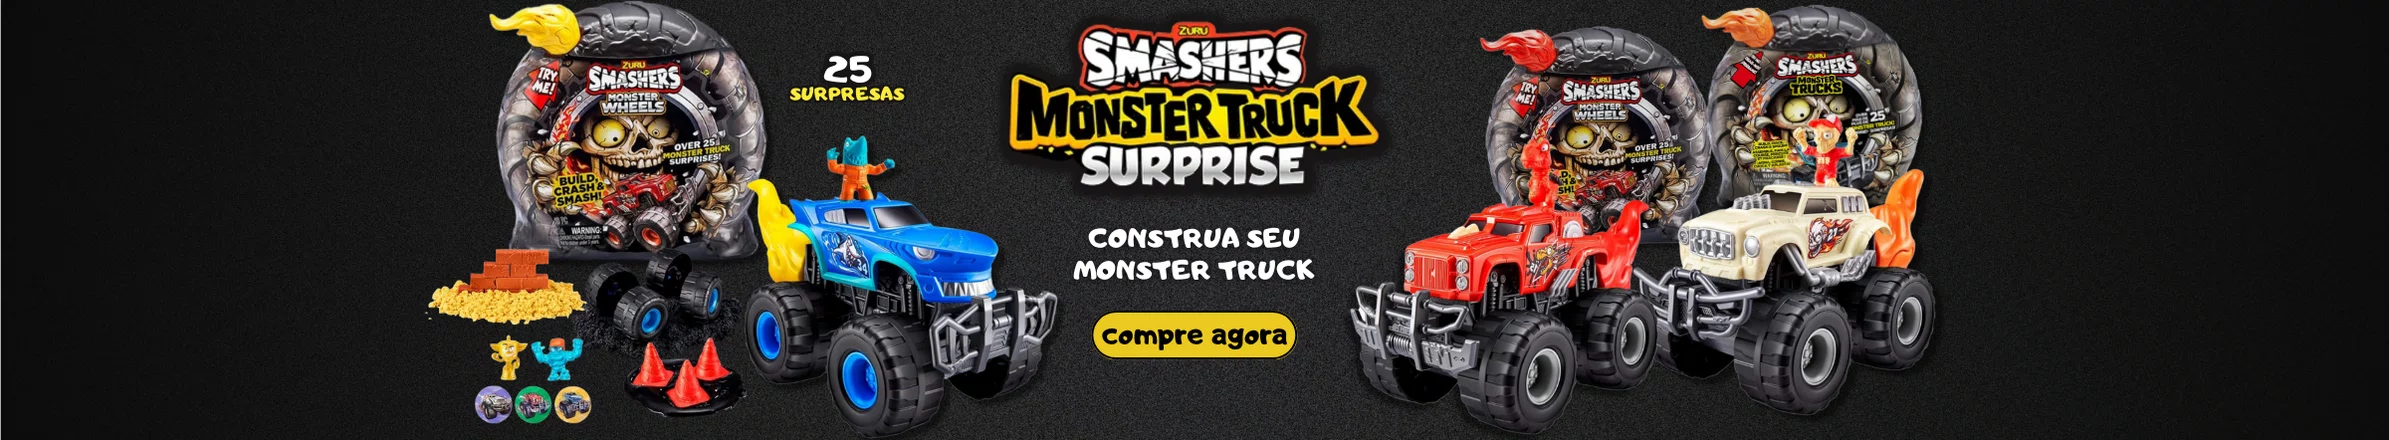 Smashers Monster Truckk